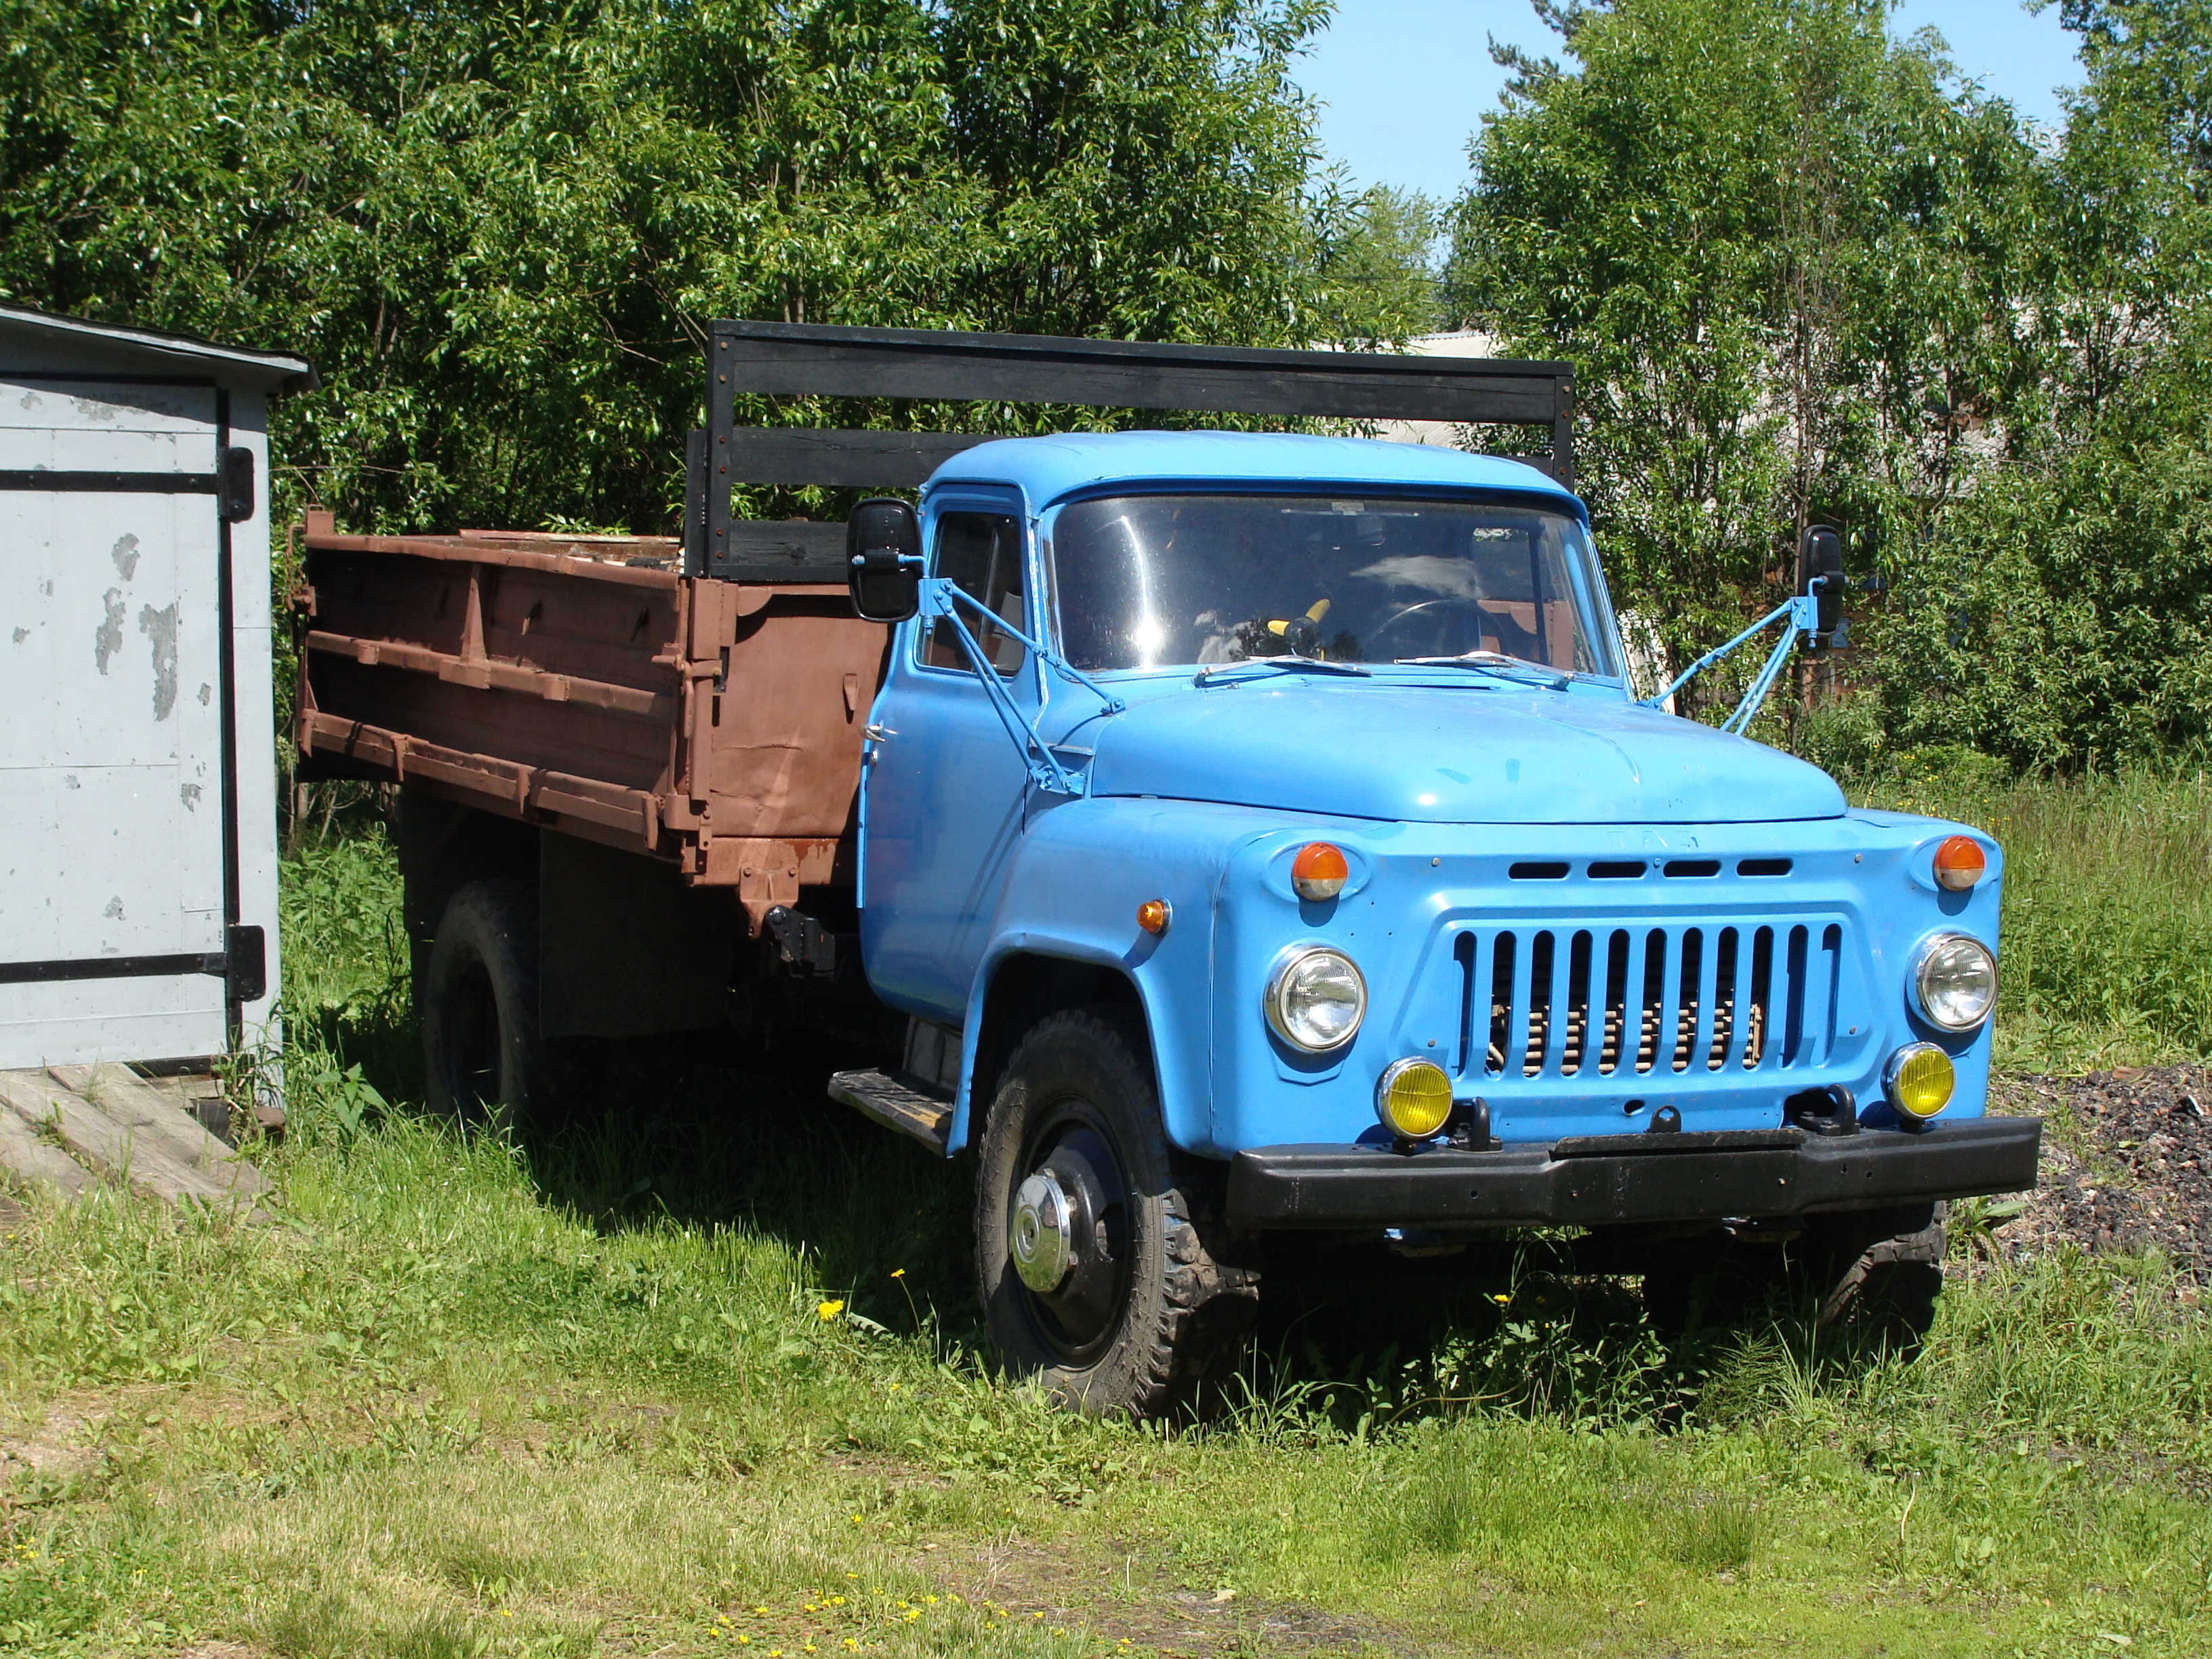 Для грузовика ГАЗ-53 середины прошлого века всё ещё можно купить новую кабину. Дороже самой машины